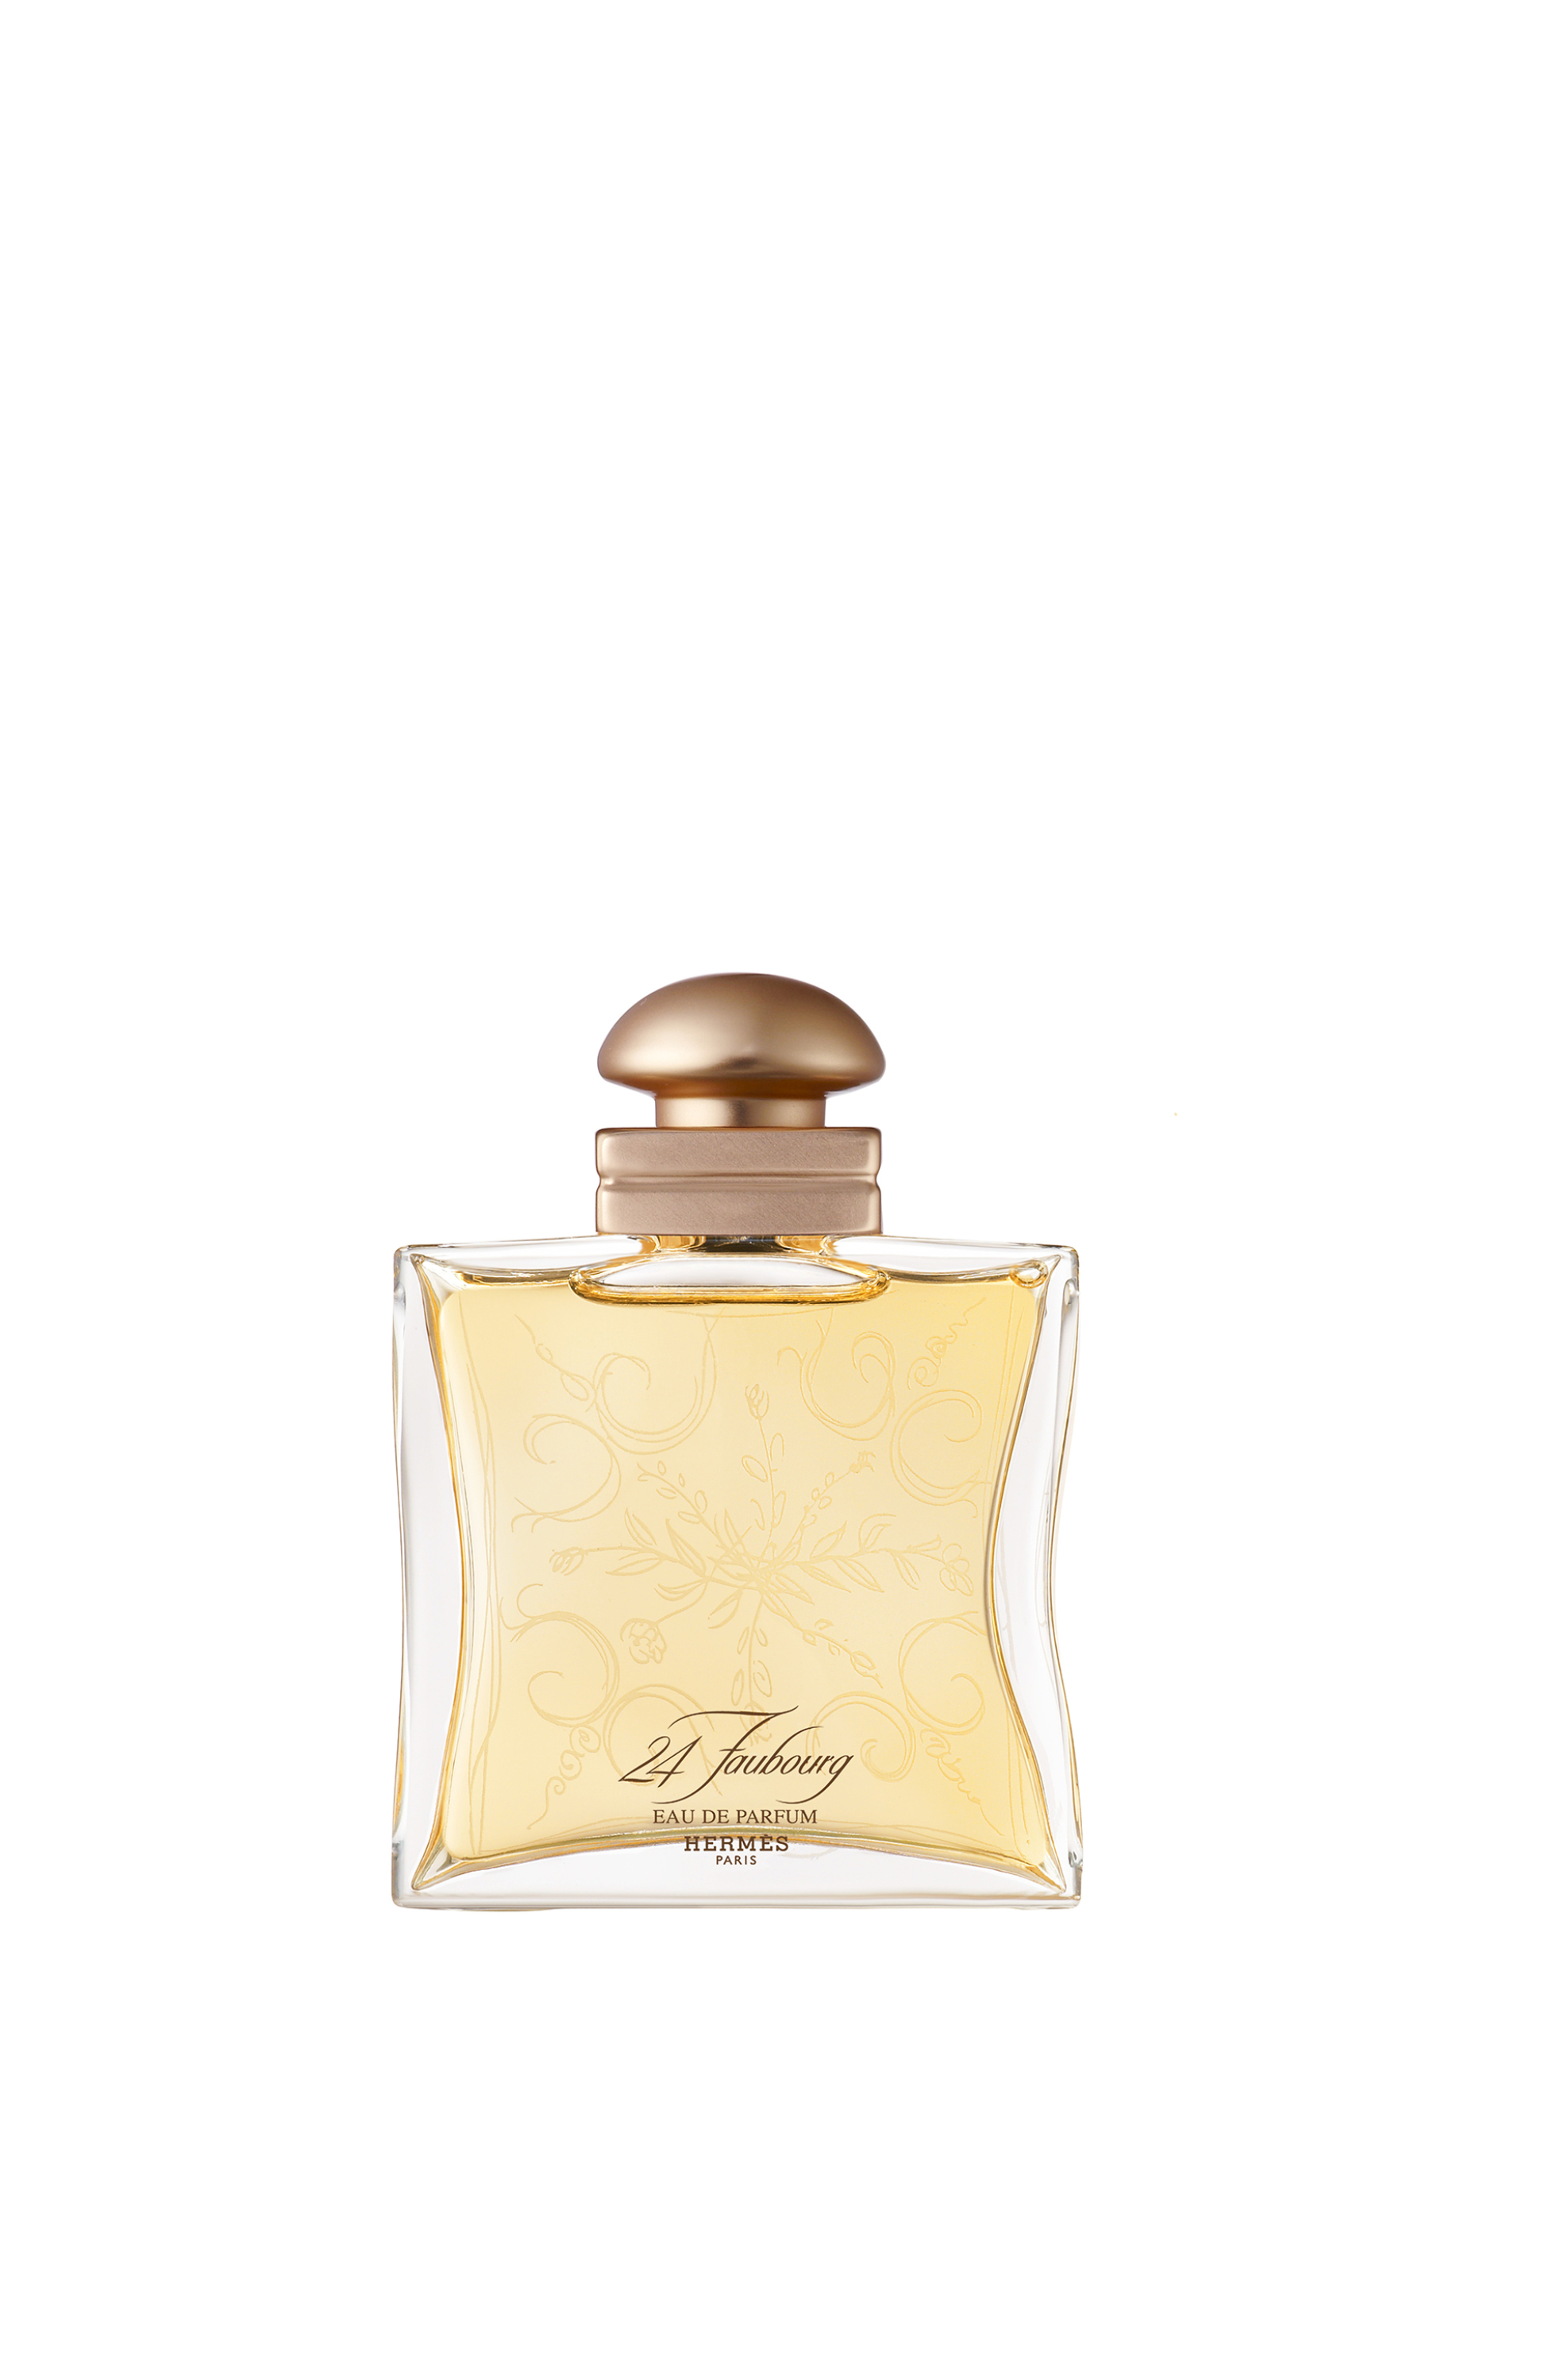 Hermès 24 Faubourg Eau de Parfum - 107375V0